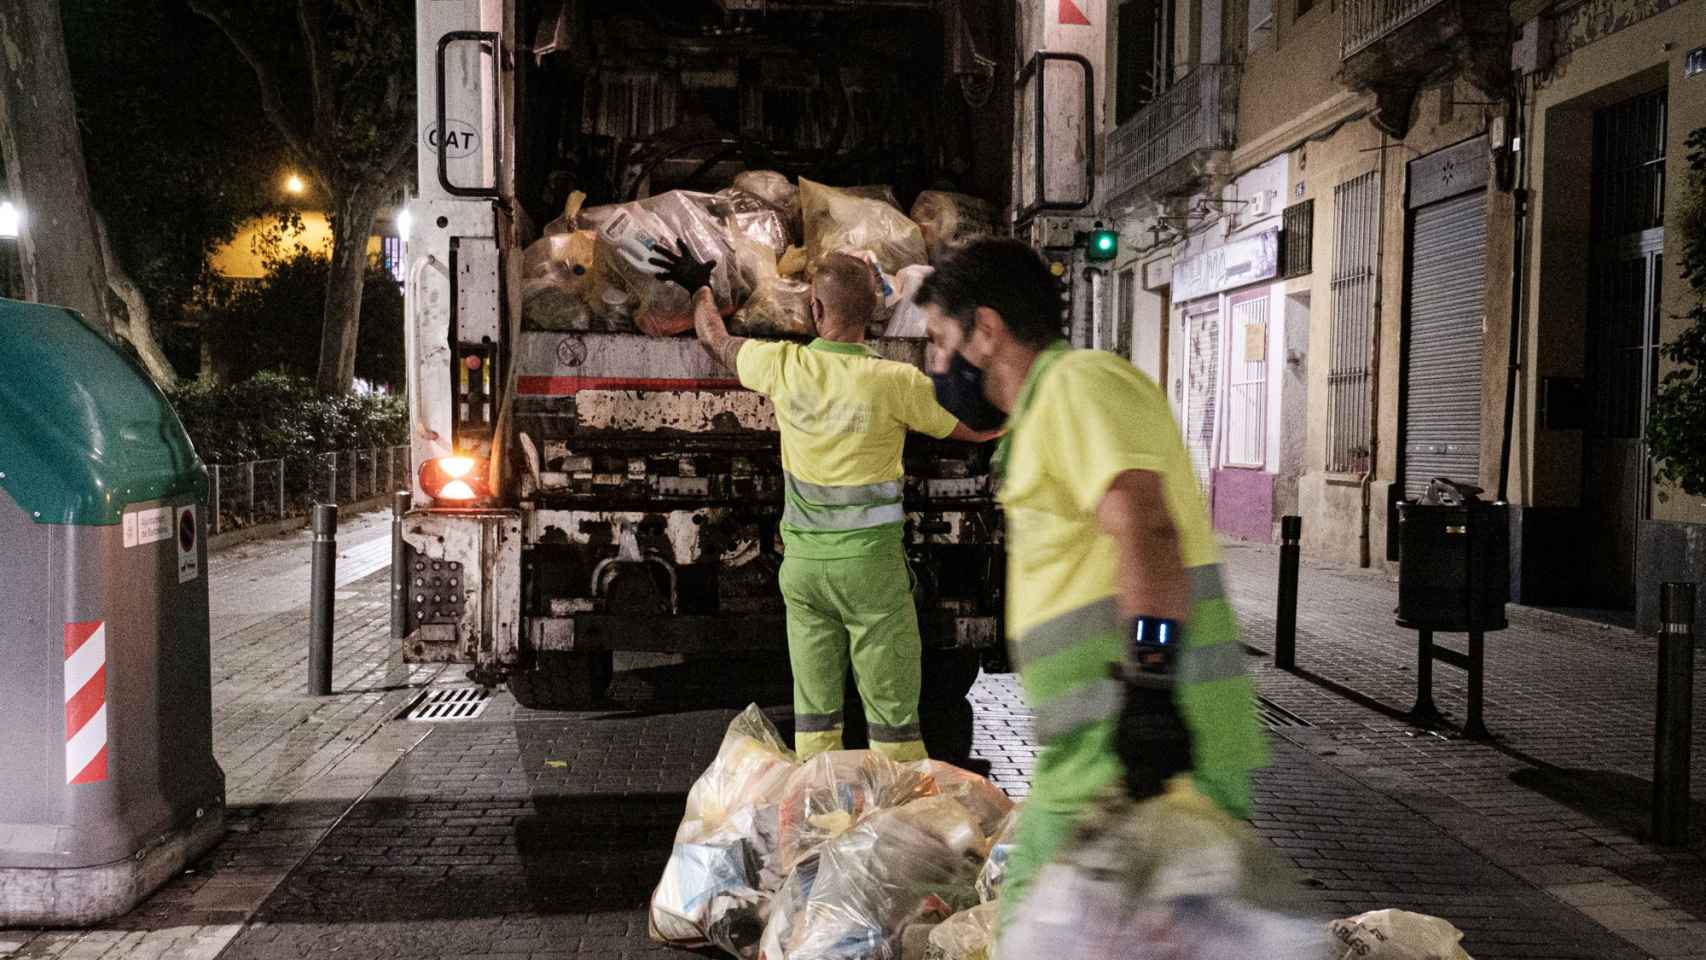 Recogida de las bolsas de basura que contienen plásticos, el pasado miércoles 8 de septiembre, en la calle Coroleu de Sant Andreu / PABLO MIRANZO